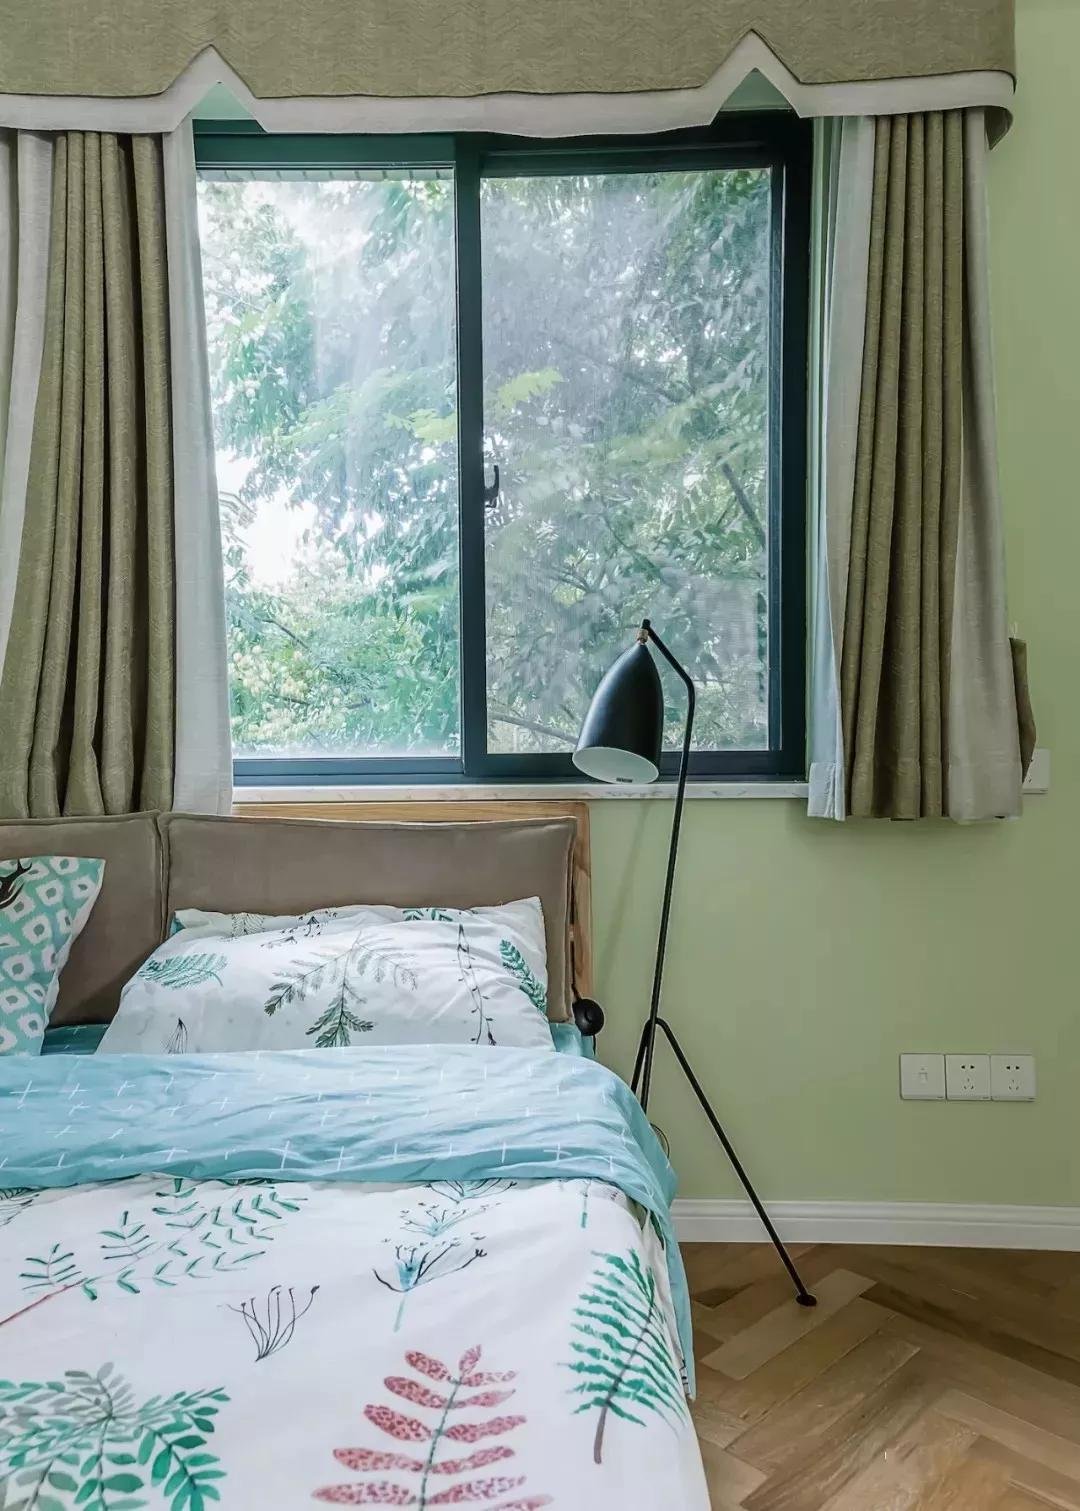 次卧的床靠着窗户摆放,以绿色作为主色调,搭配带有绿植花纹的床品